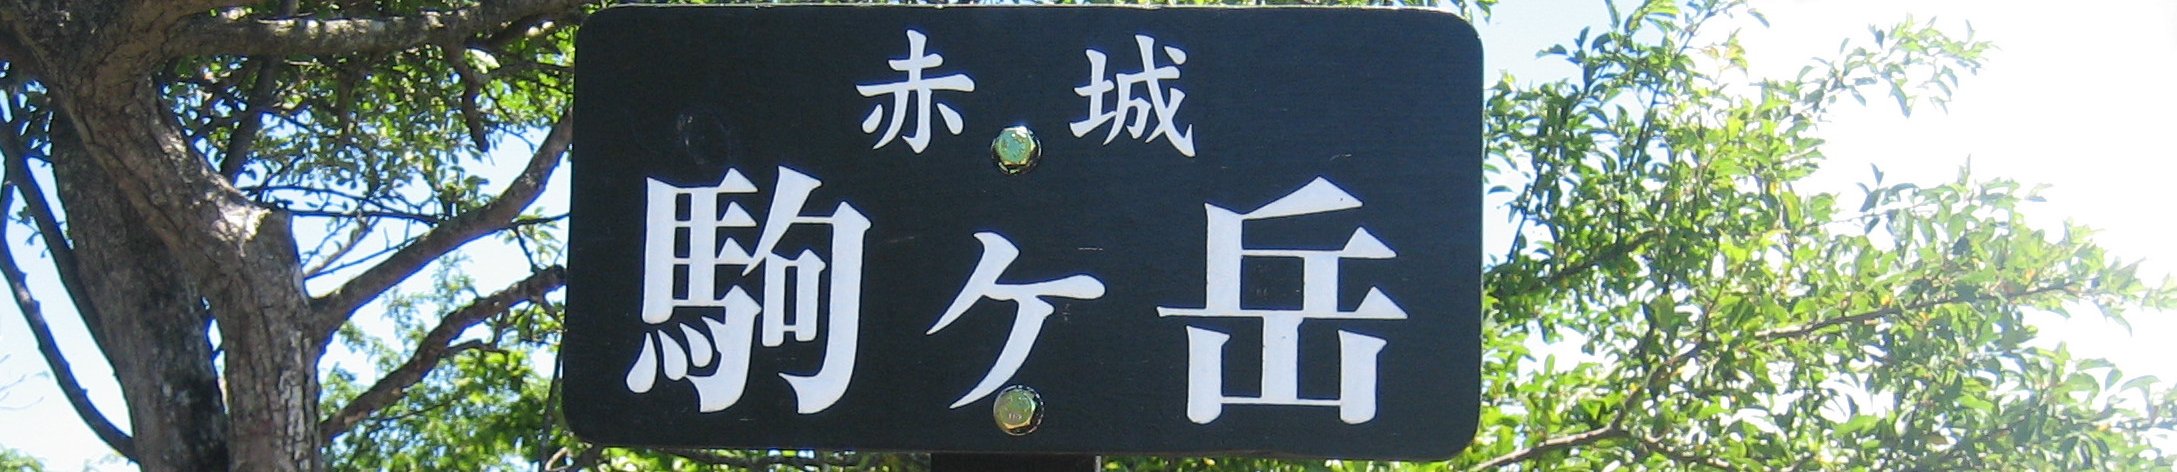 赤城山 banner image